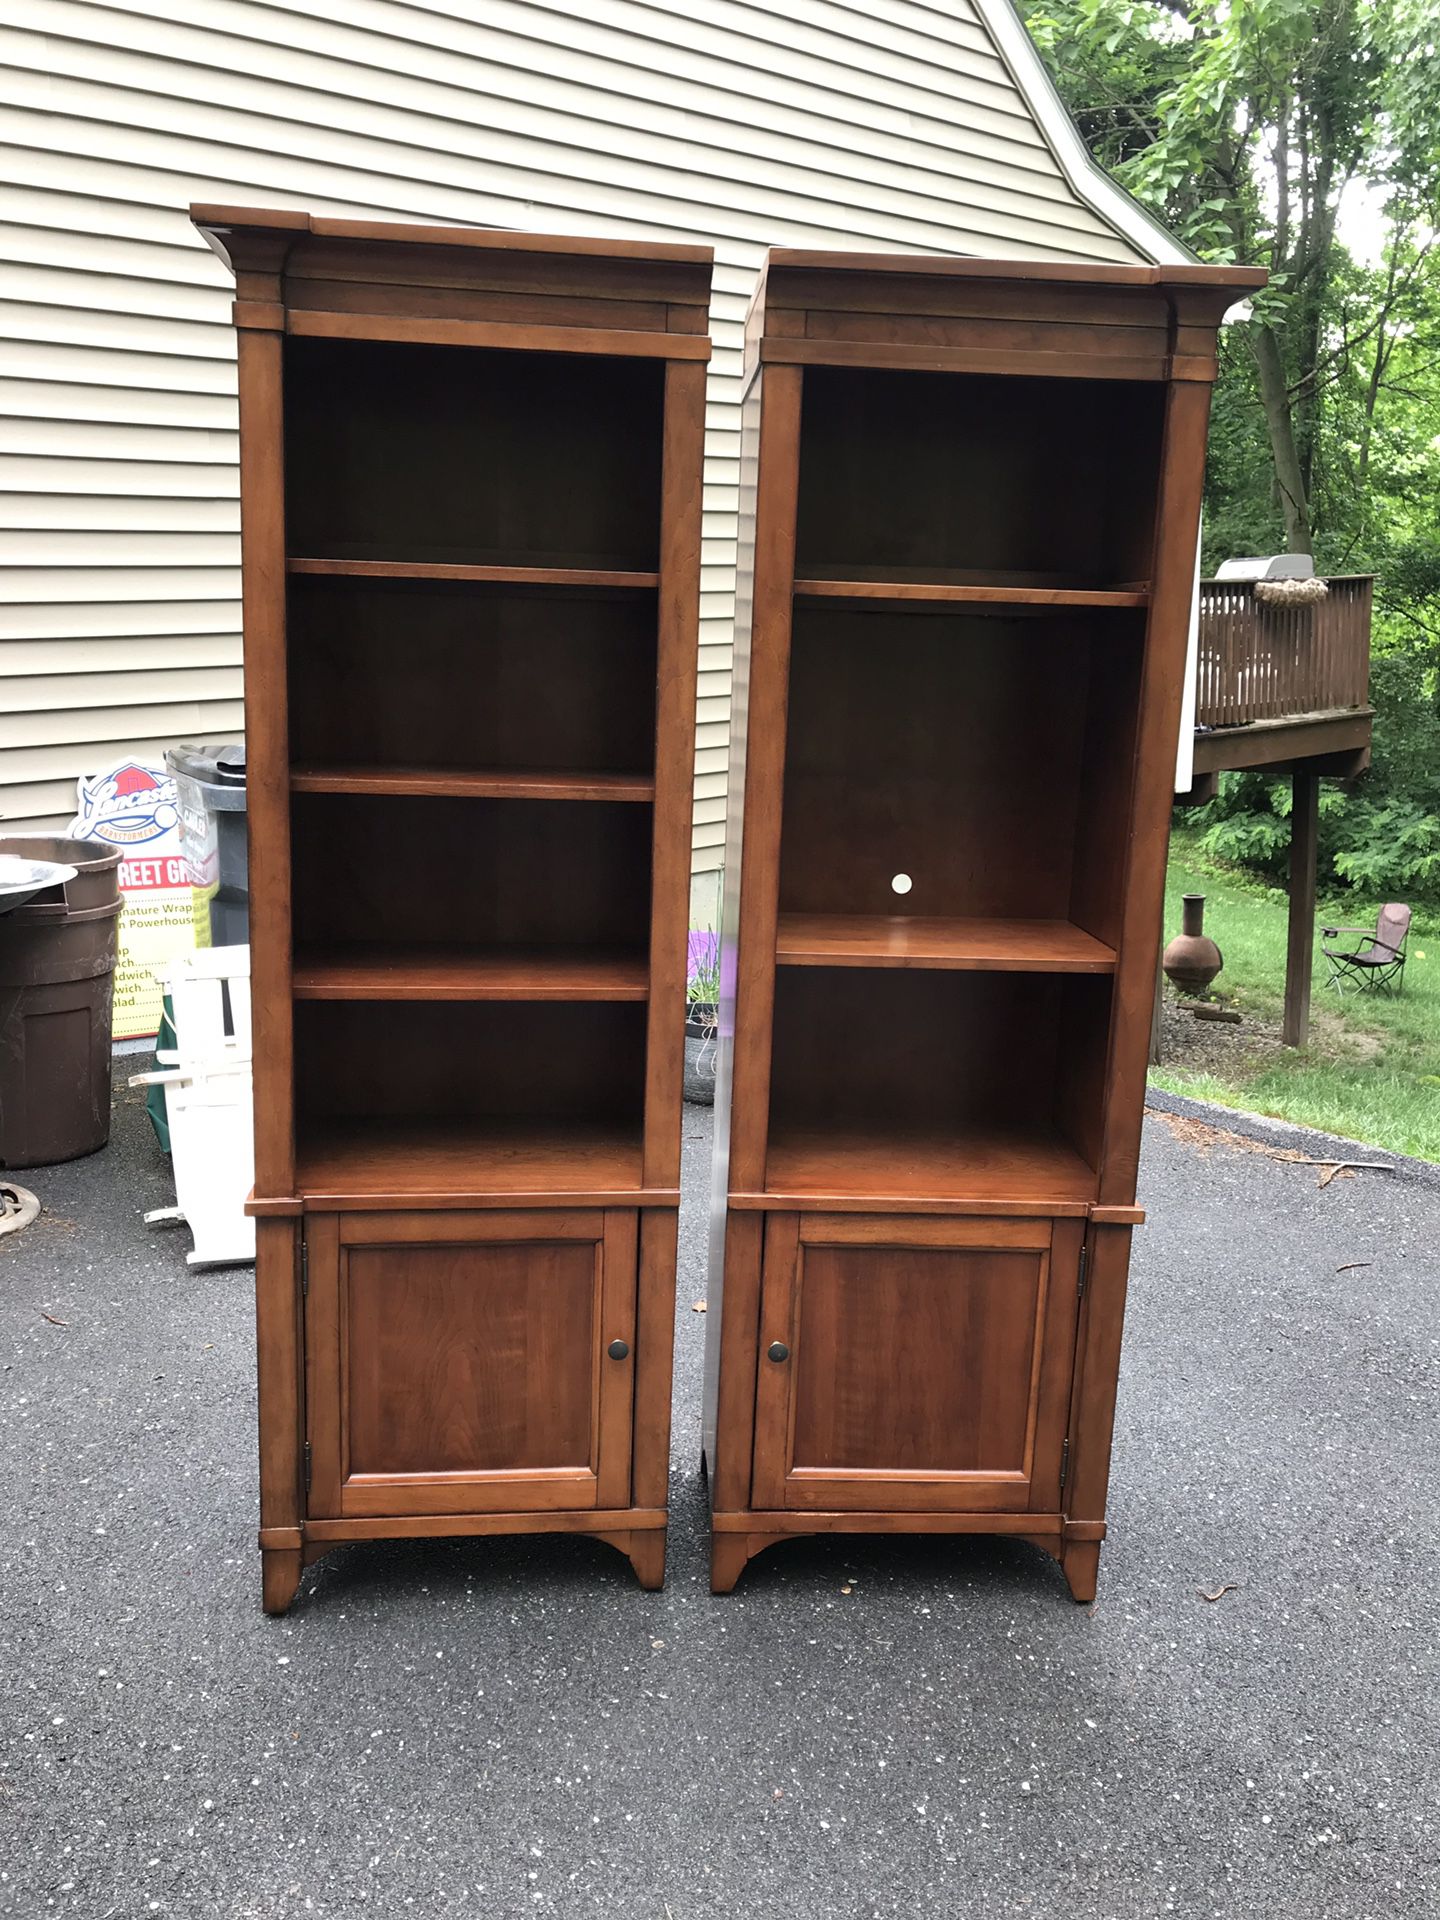 2 bookshelves